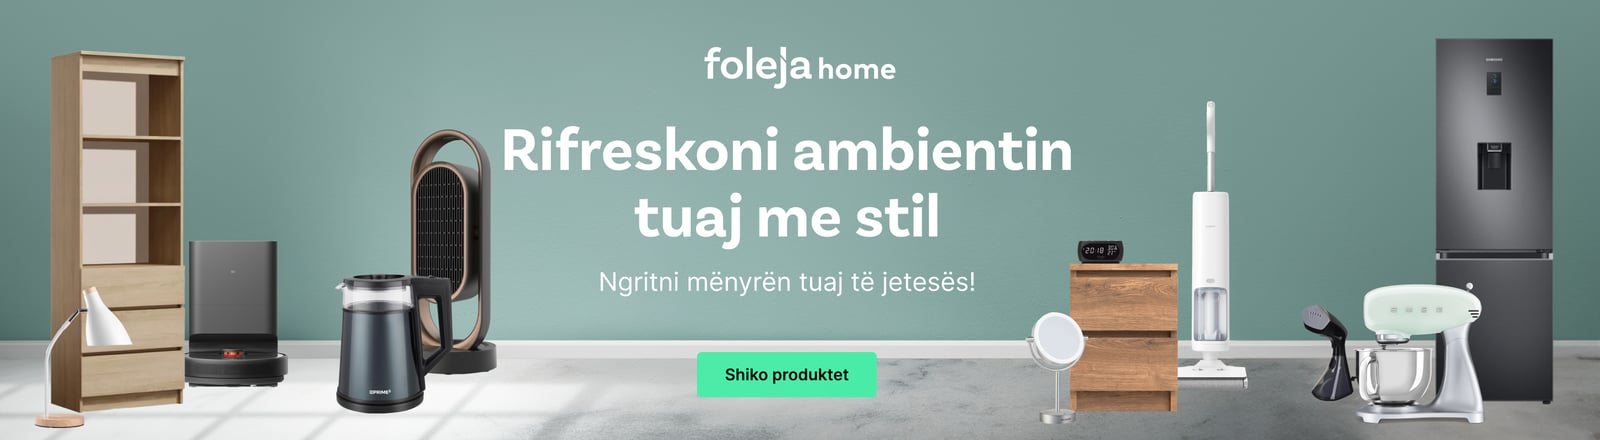 Banner-foleja-home-web